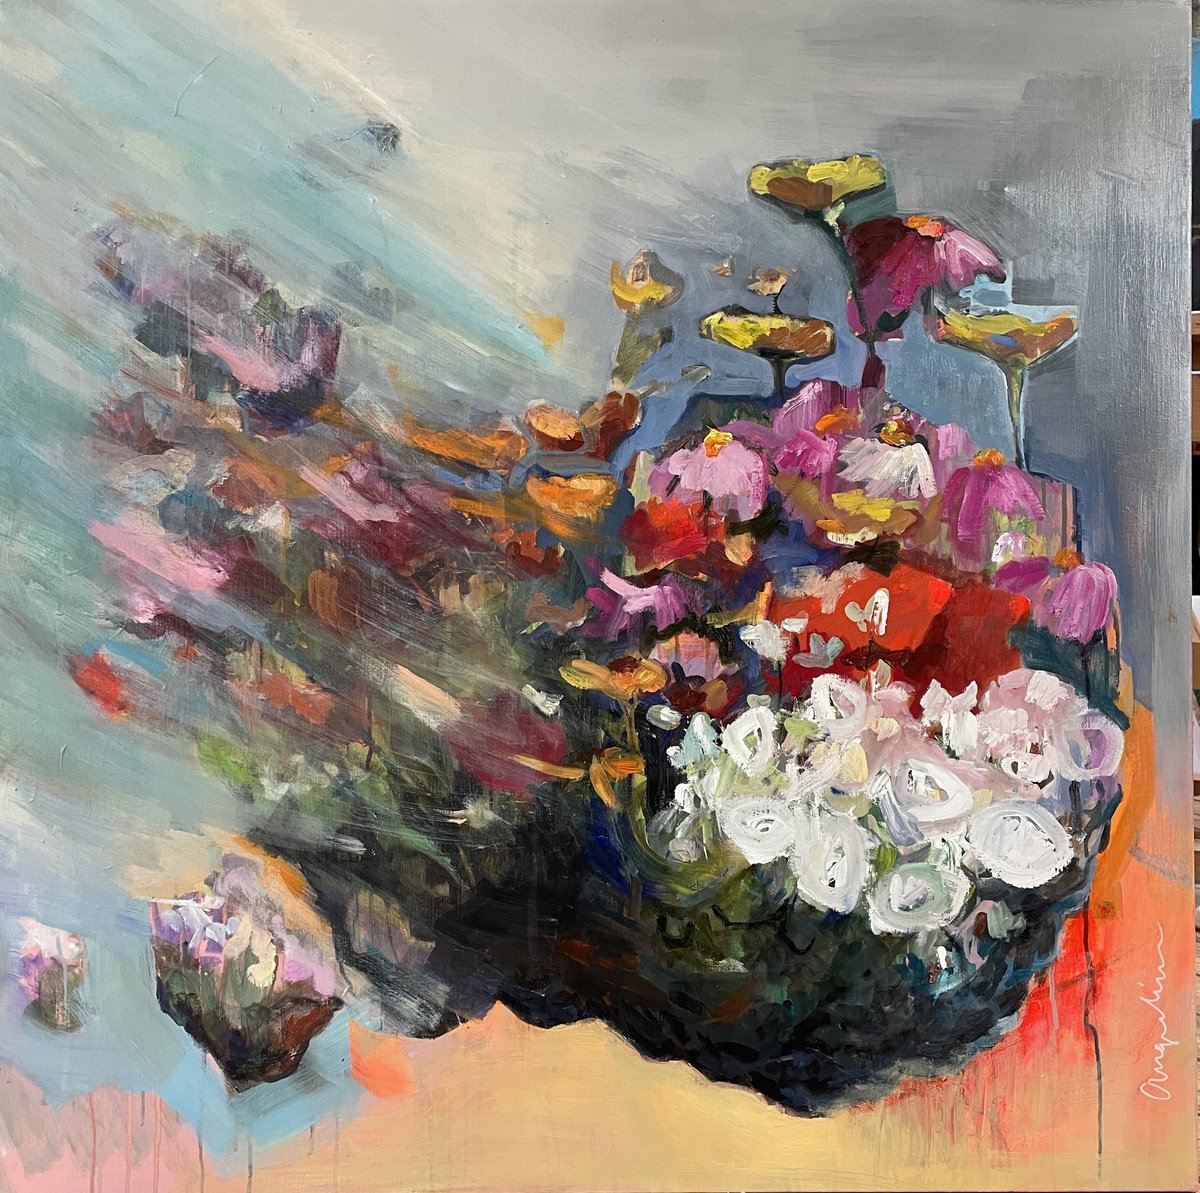 Flowerbomb by Angeline Maas